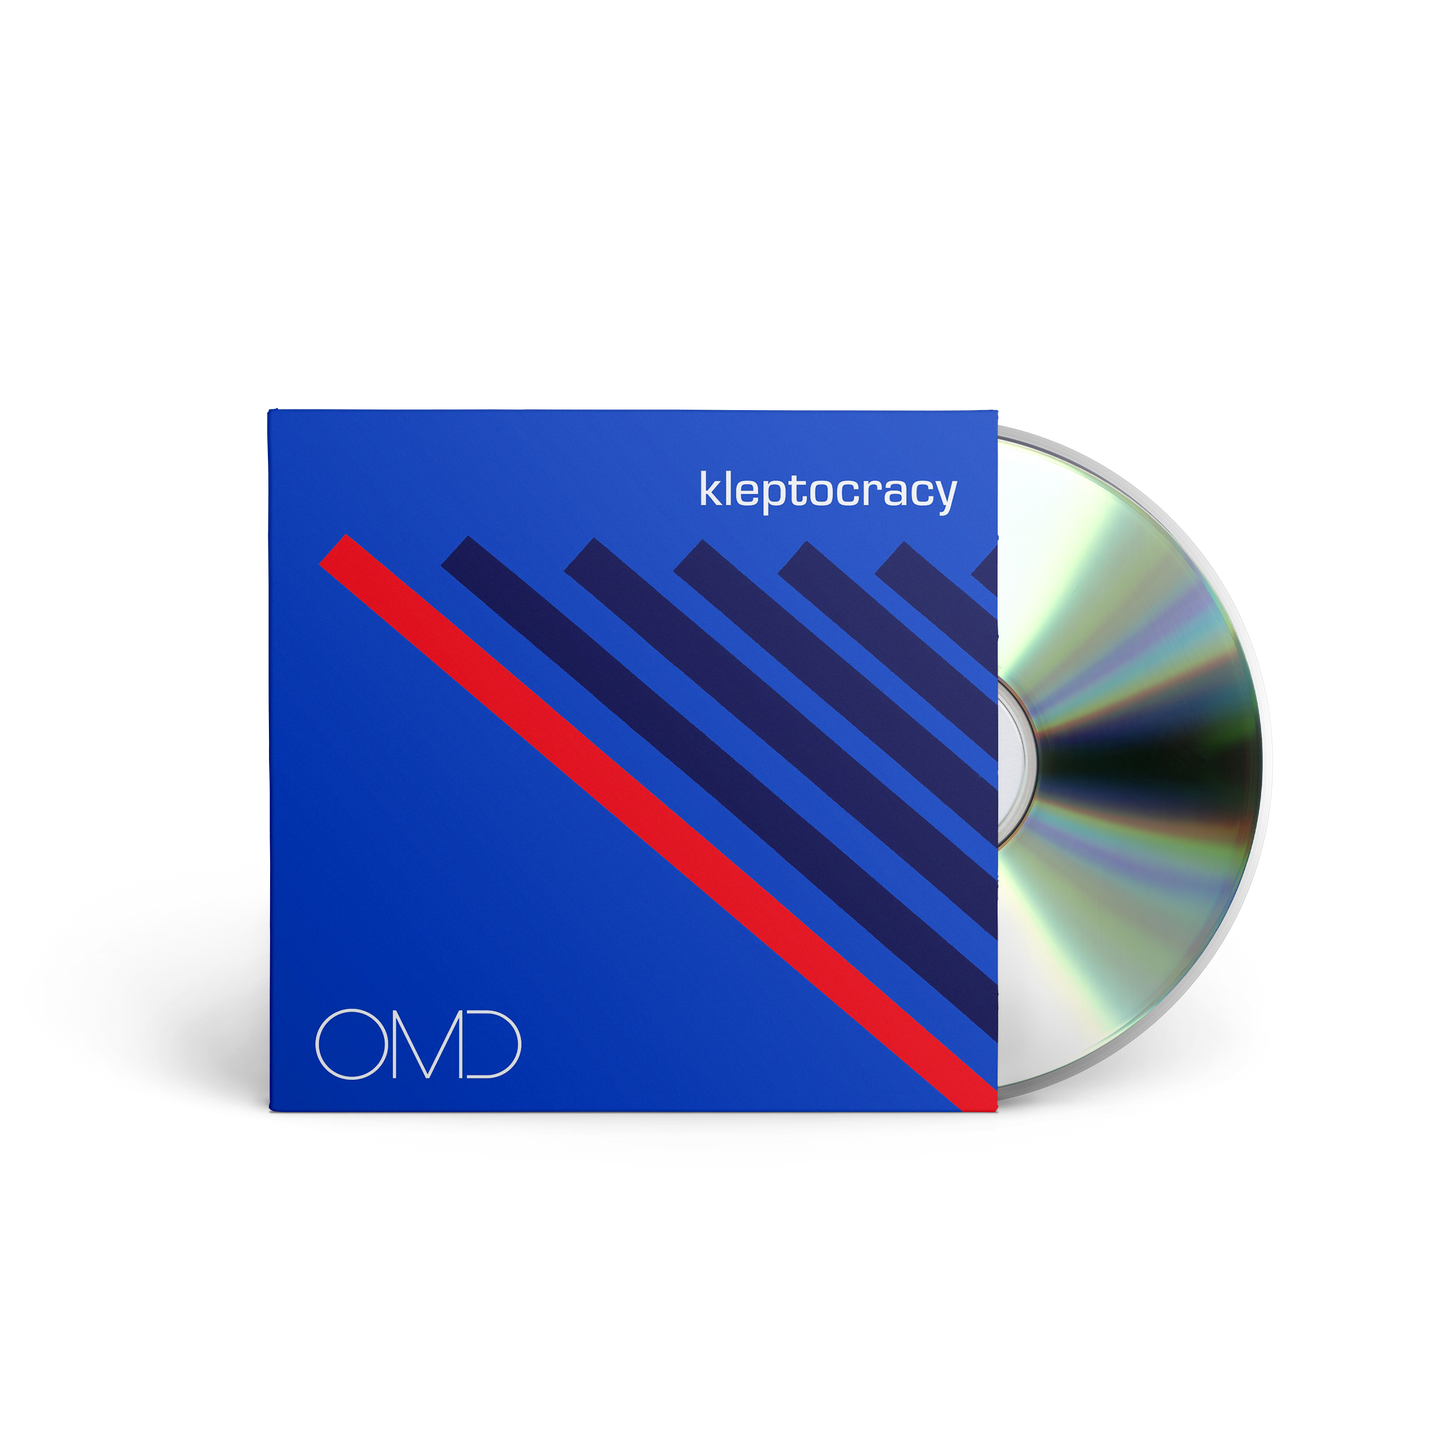 kleptocracy cd single